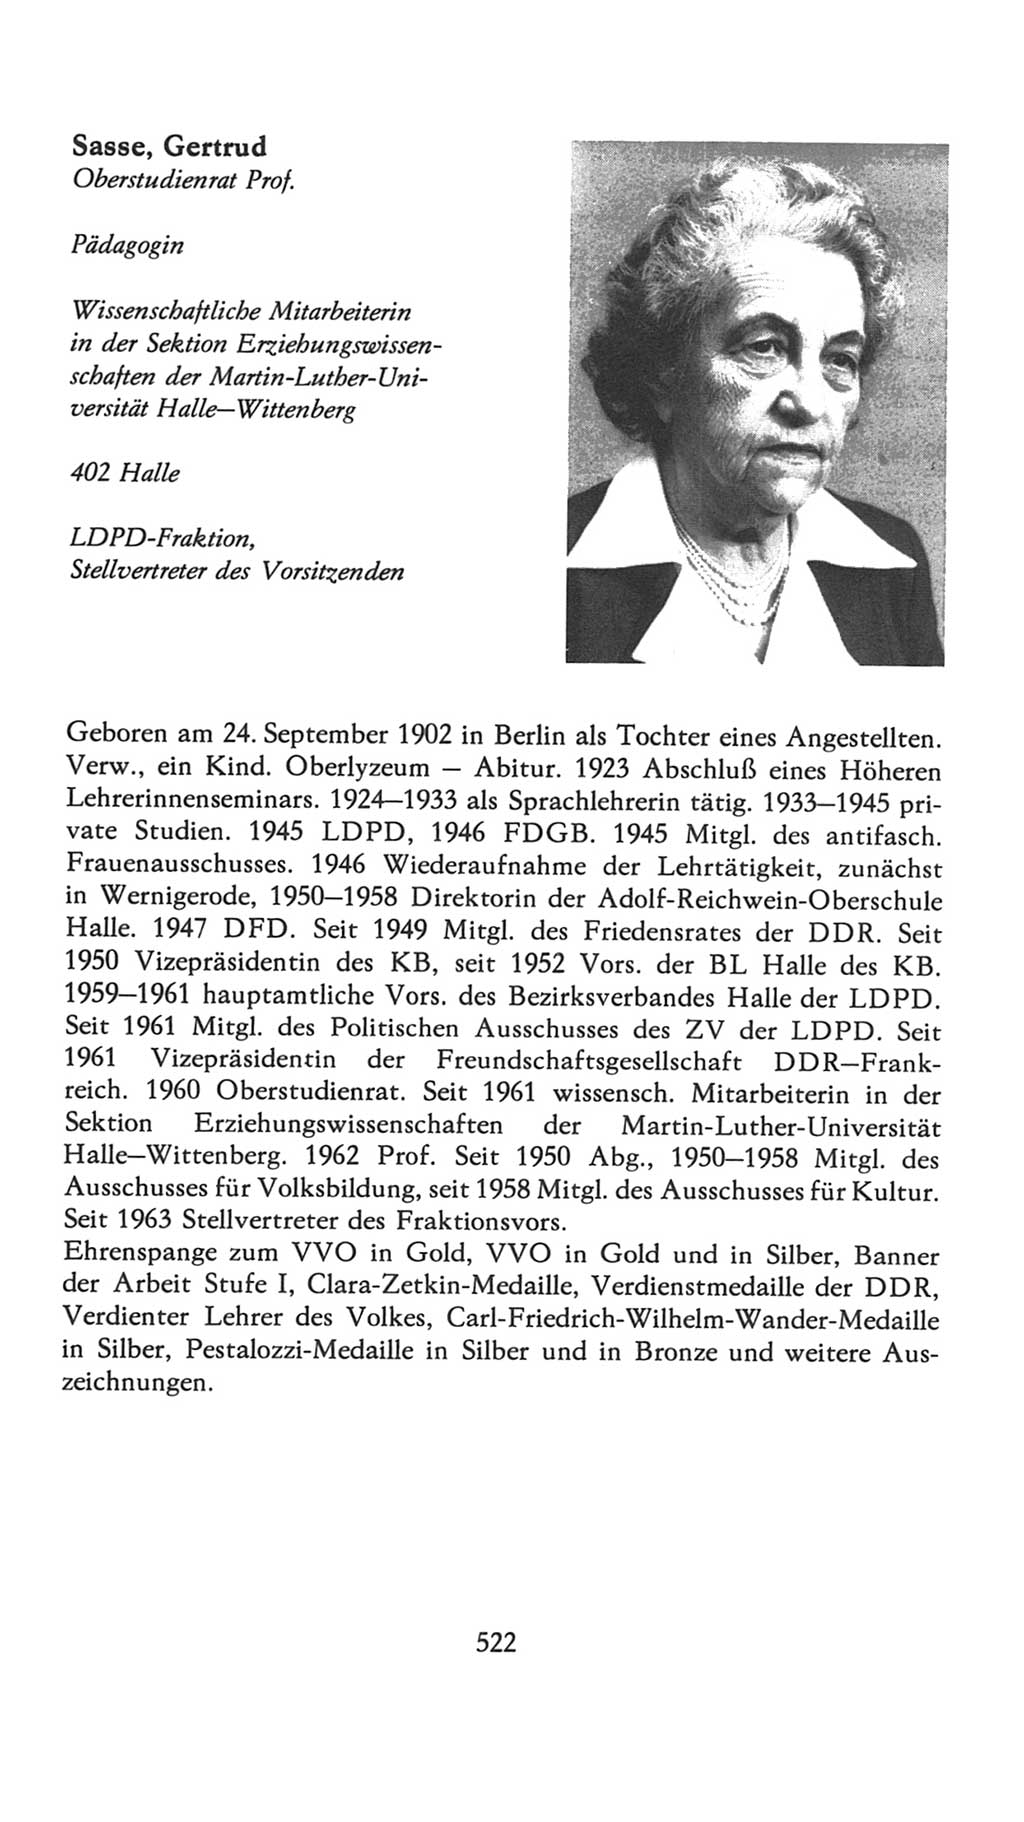 Volkskammer (VK) der Deutschen Demokratischen Republik (DDR), 7. Wahlperiode 1976-1981, Seite 522 (VK. DDR 7. WP. 1976-1981, S. 522)